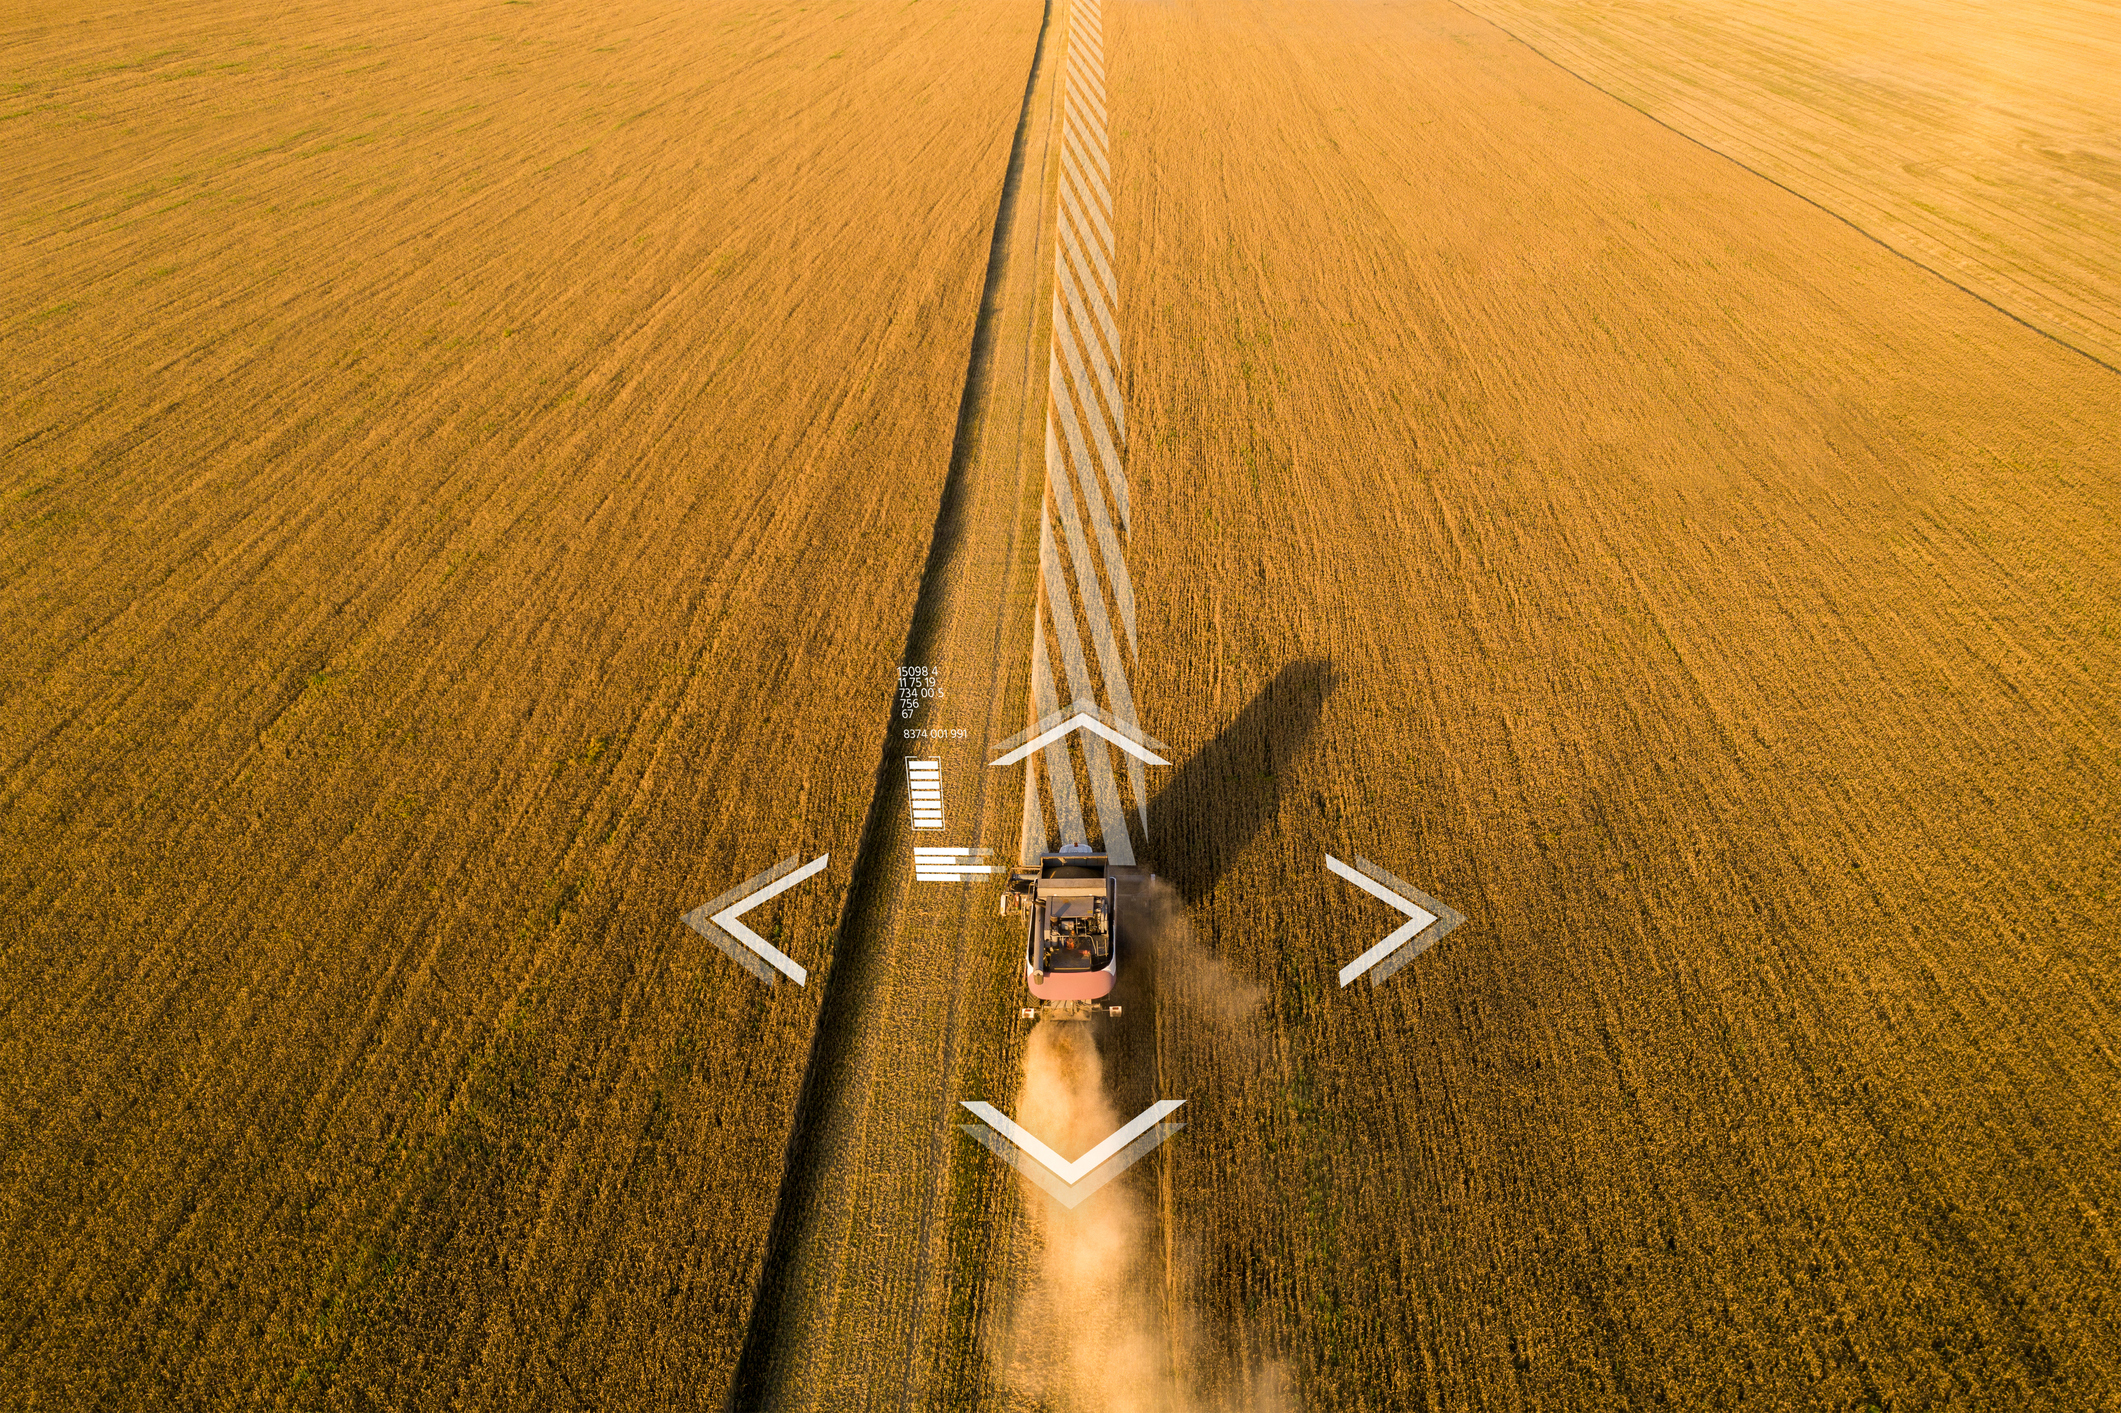 Tractor precision farming in a wheat field